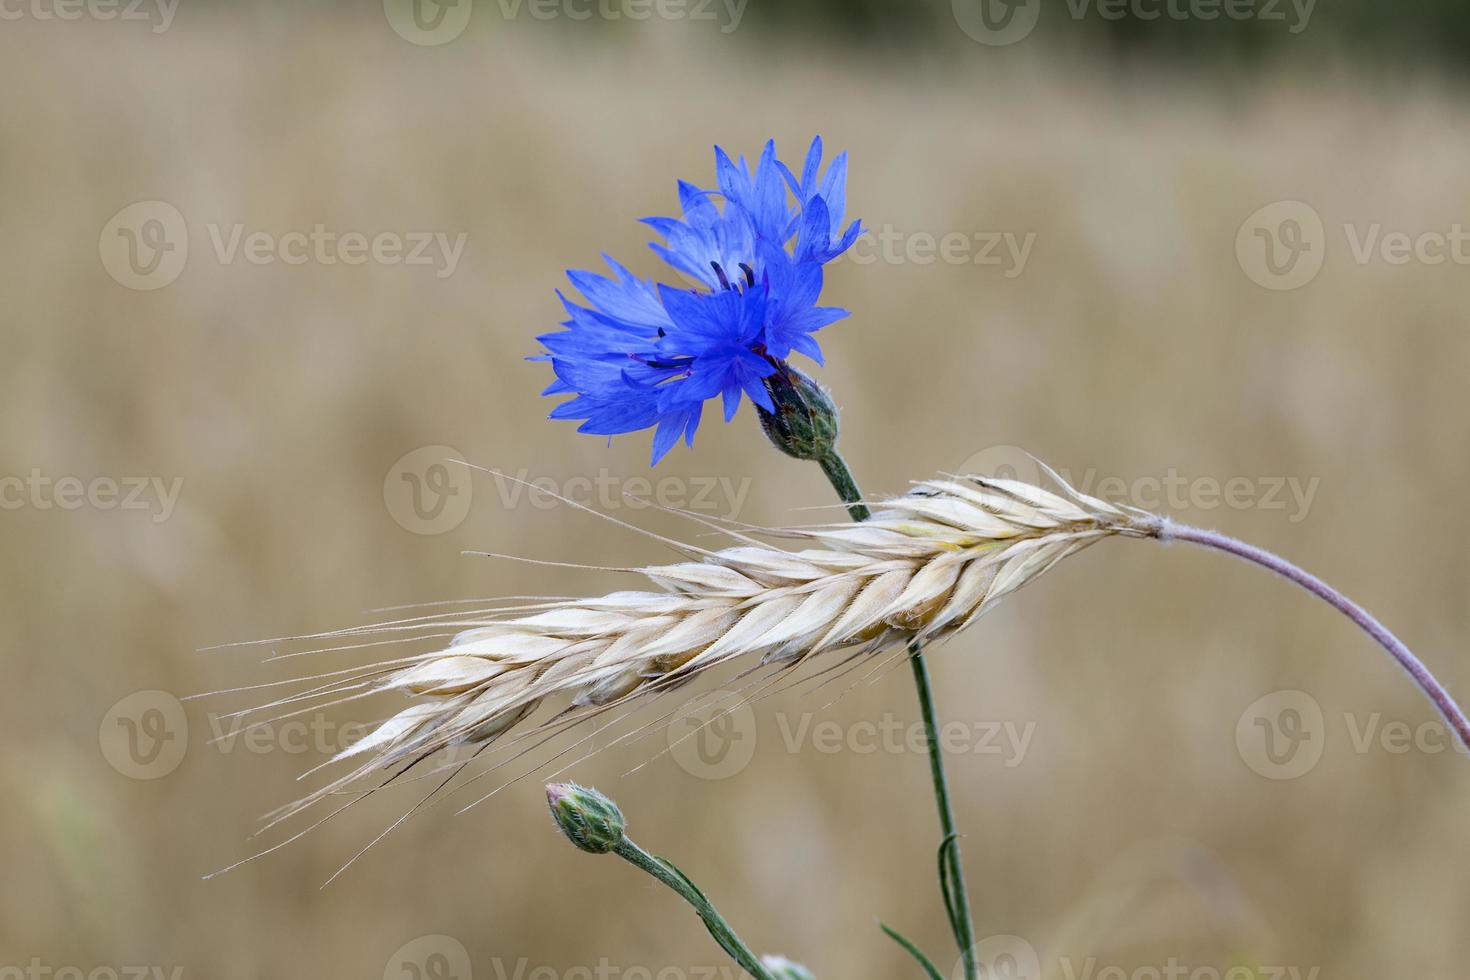 le bleuet bleu poussant sur un champ agricole blé photo